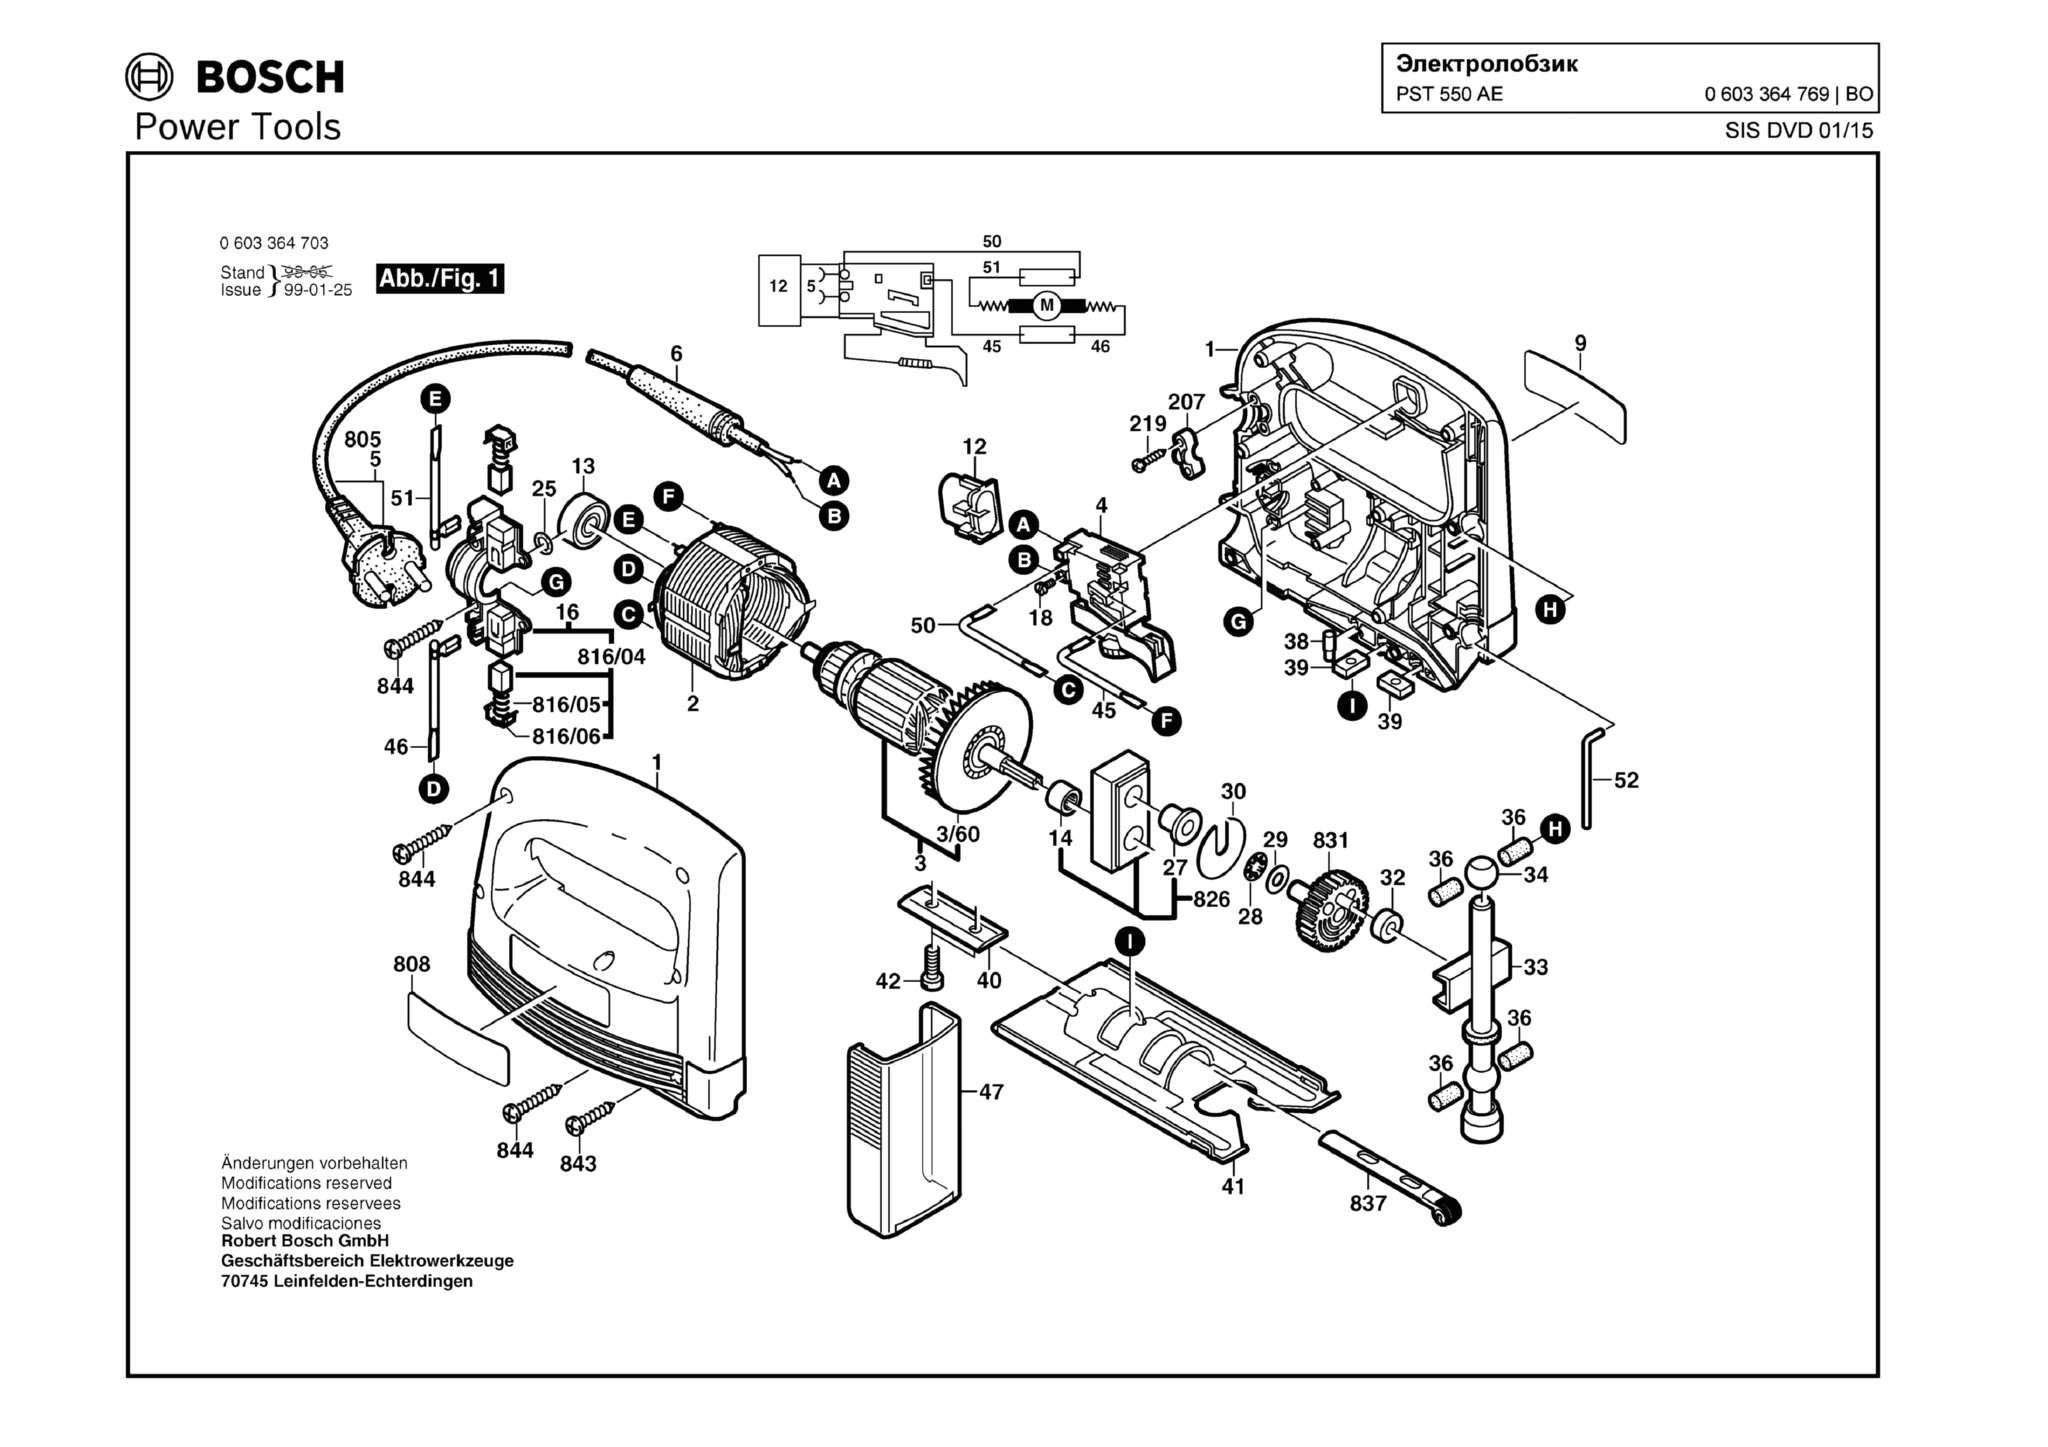 Запчасти, схема и деталировка Bosch PST 550 AE (ТИП 0603364769)